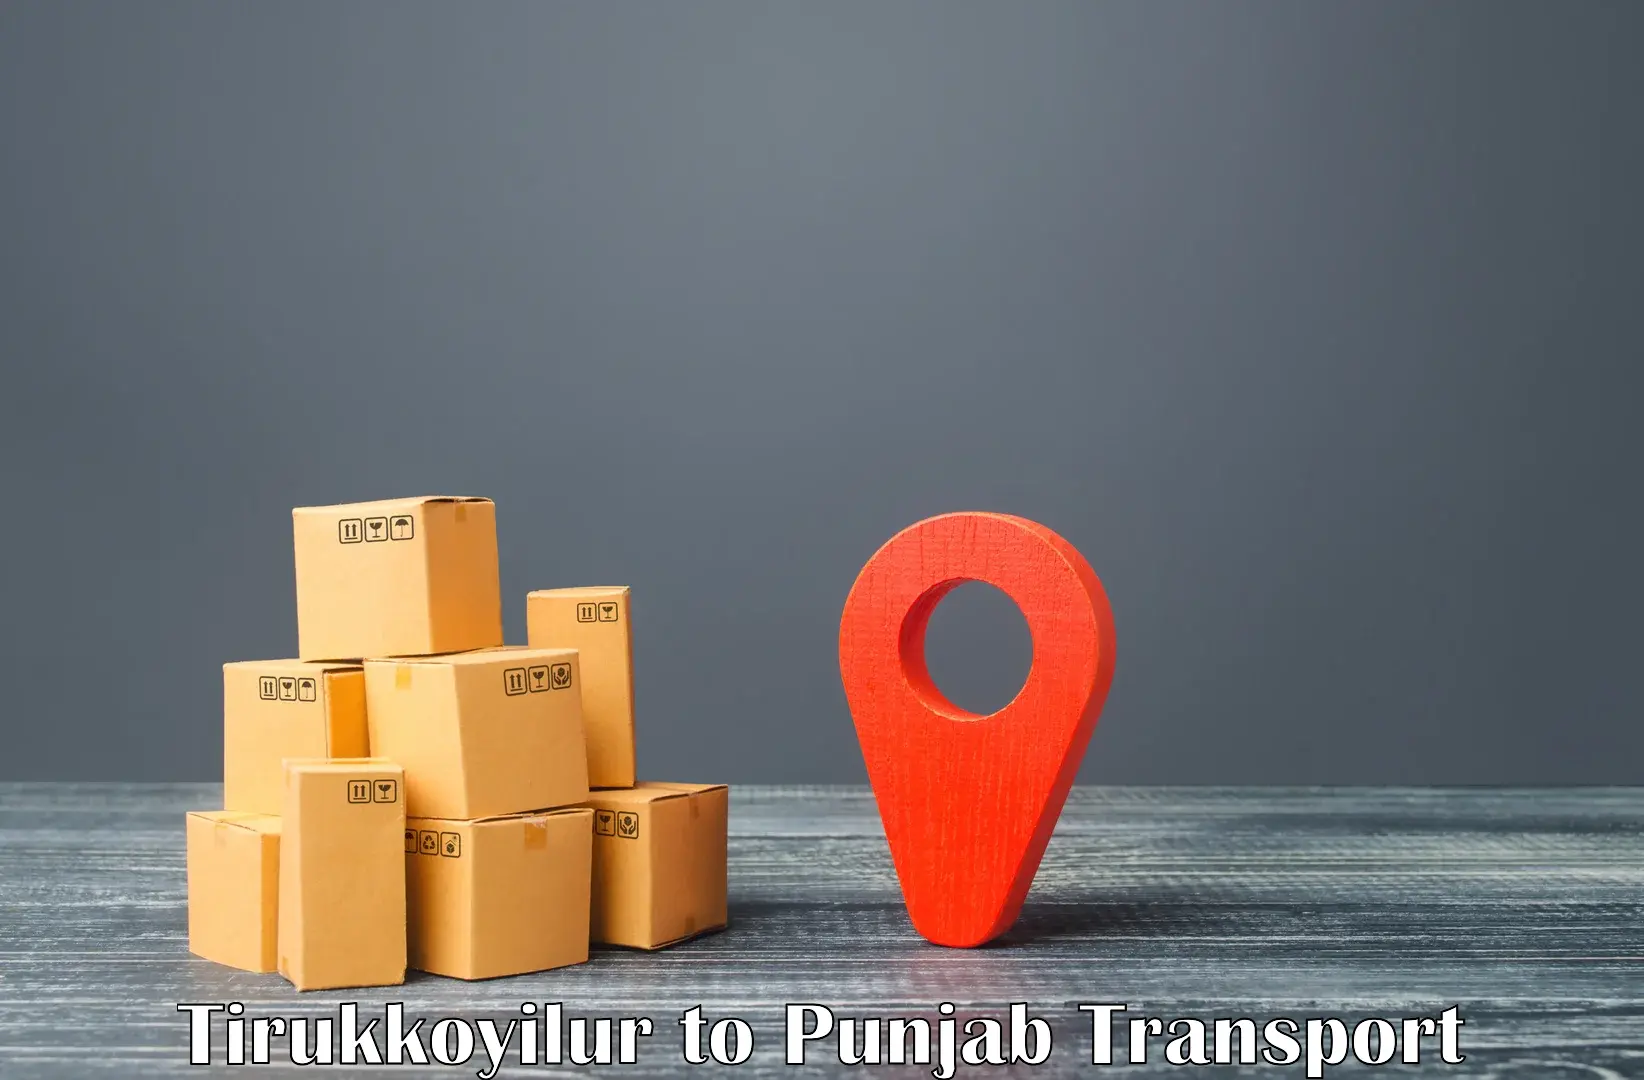 Part load transport service in India Tirukkoyilur to Mansa